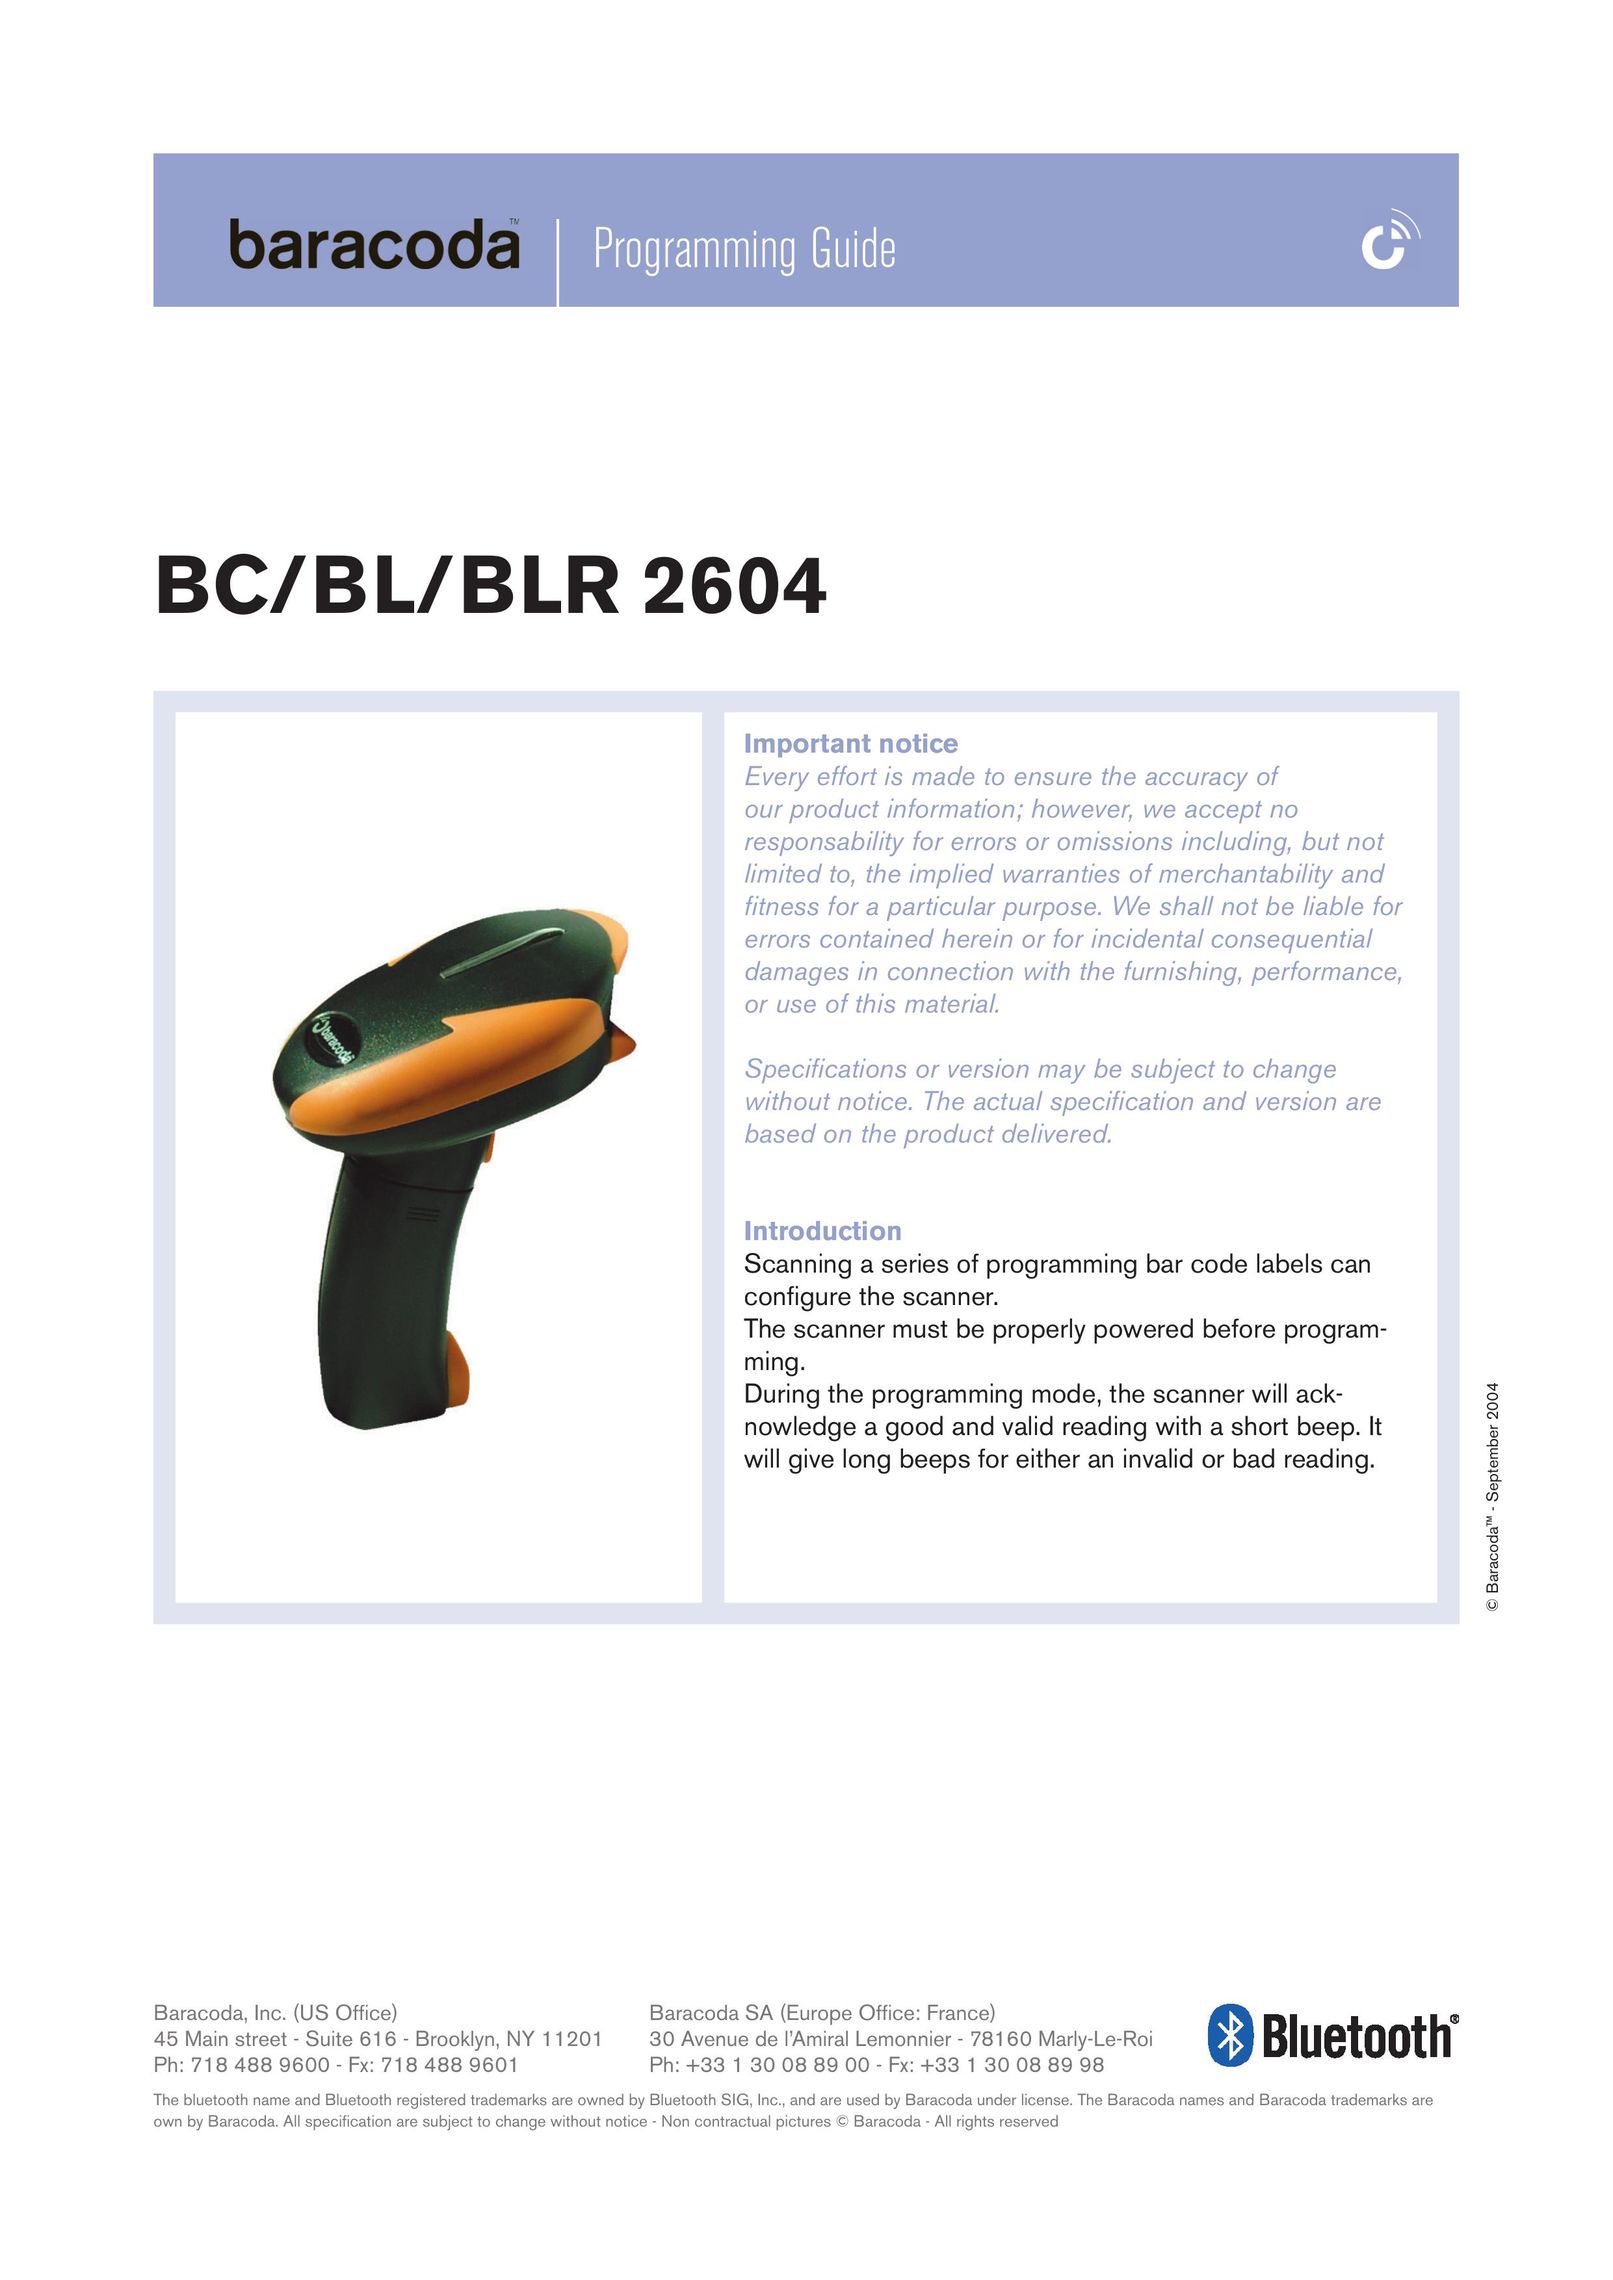 Baracoda BL2604 Barcode Reader User Manual (Page 1)